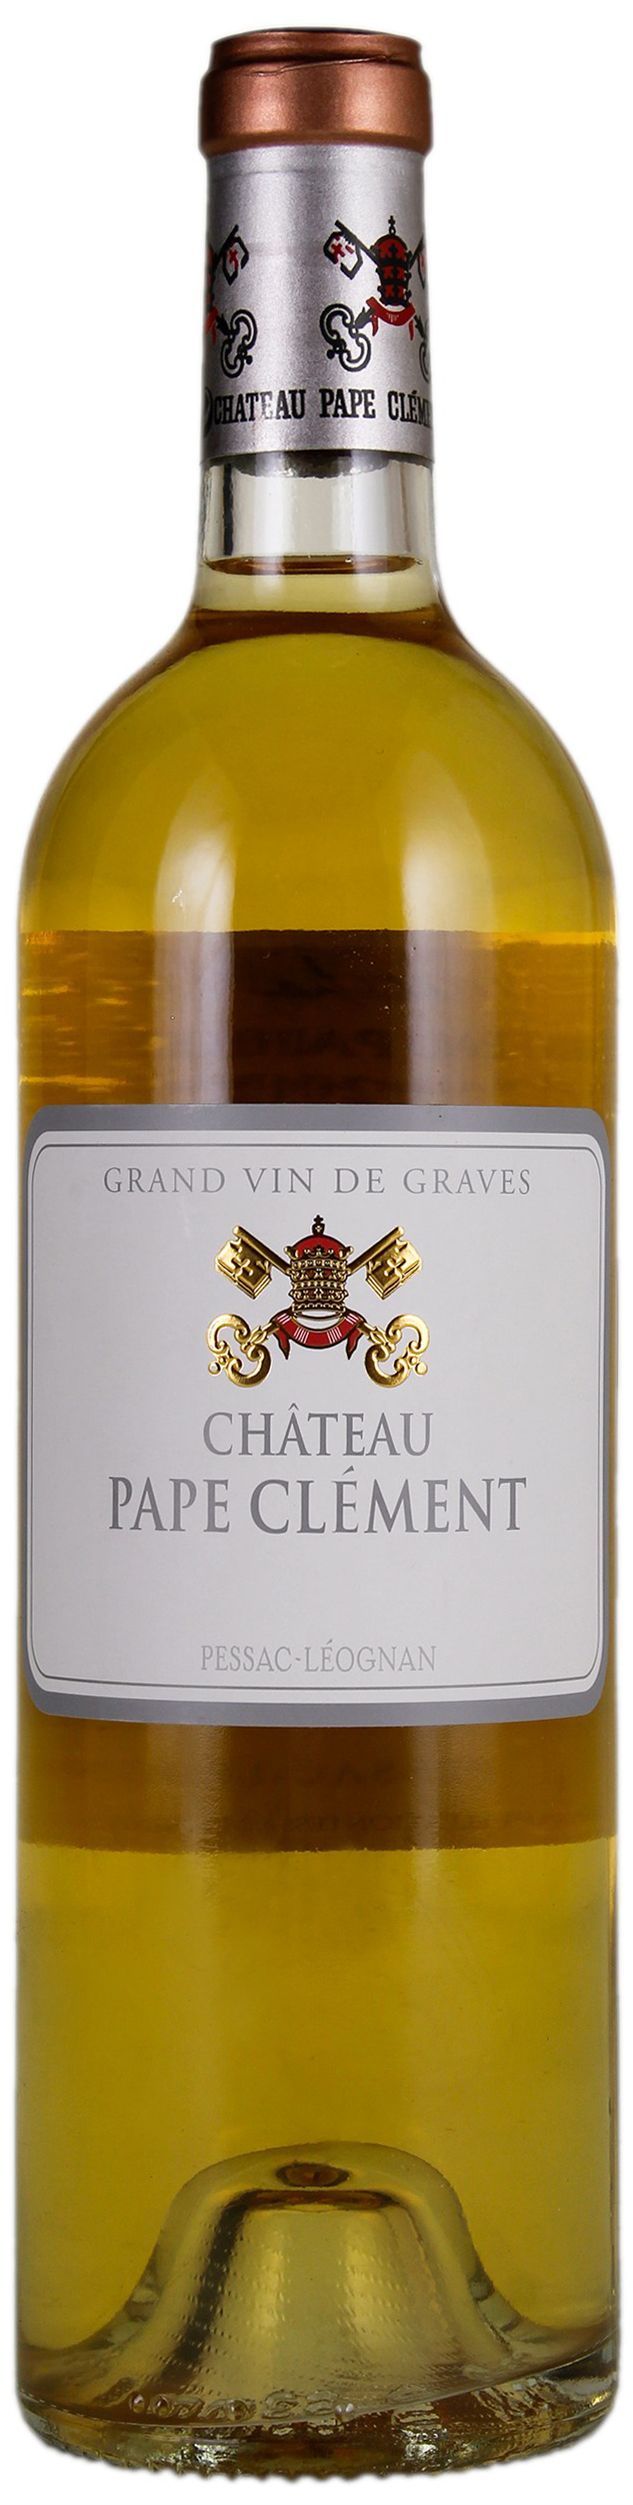 Chateau Pape Clement, Blanc Grand Cru Classe De Graves, 2010